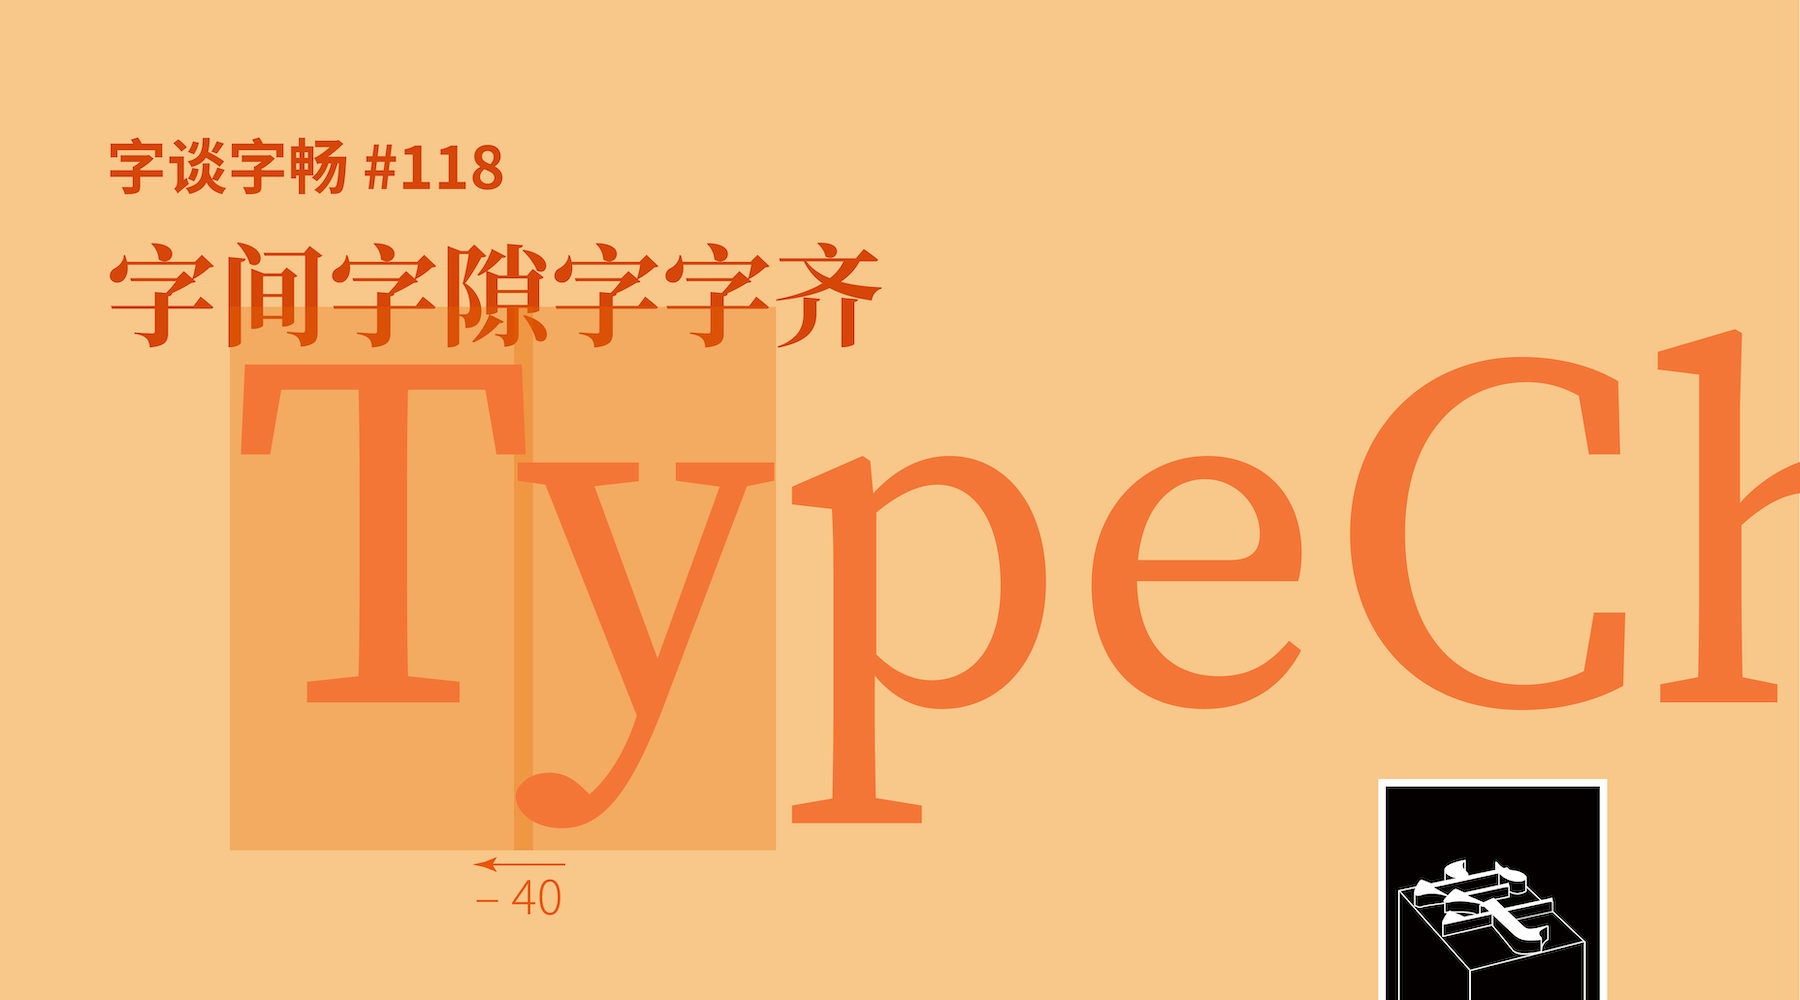 TypeChat #118